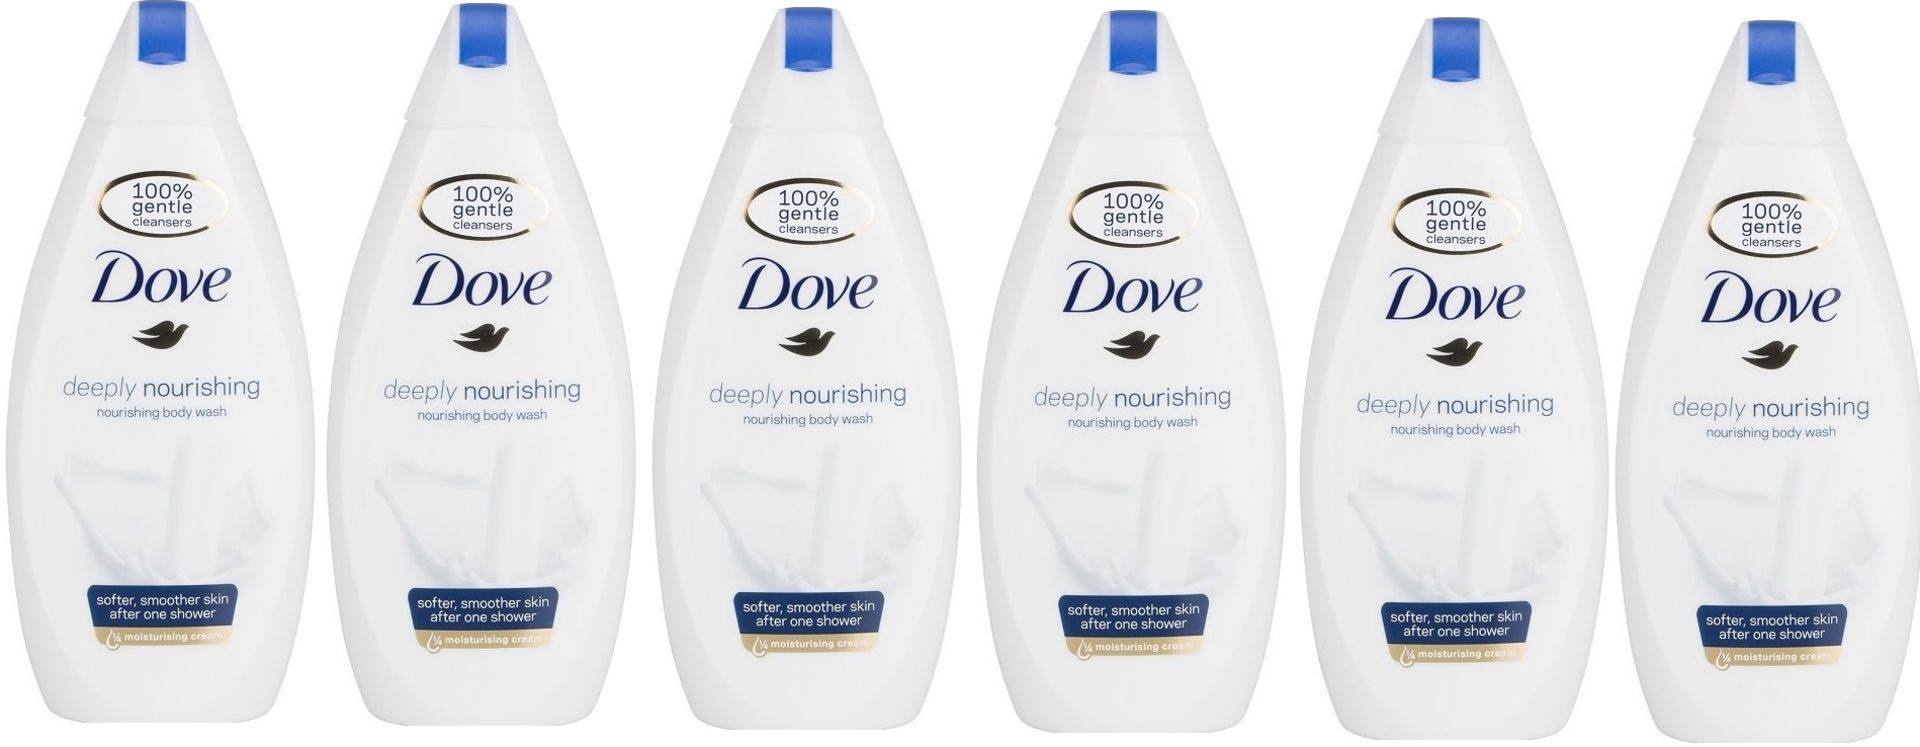 V Brand New Six Bottles Dove Deeply Nourishing Body Wash 1/4 Moisturising Cream - 250ML Per Bottle